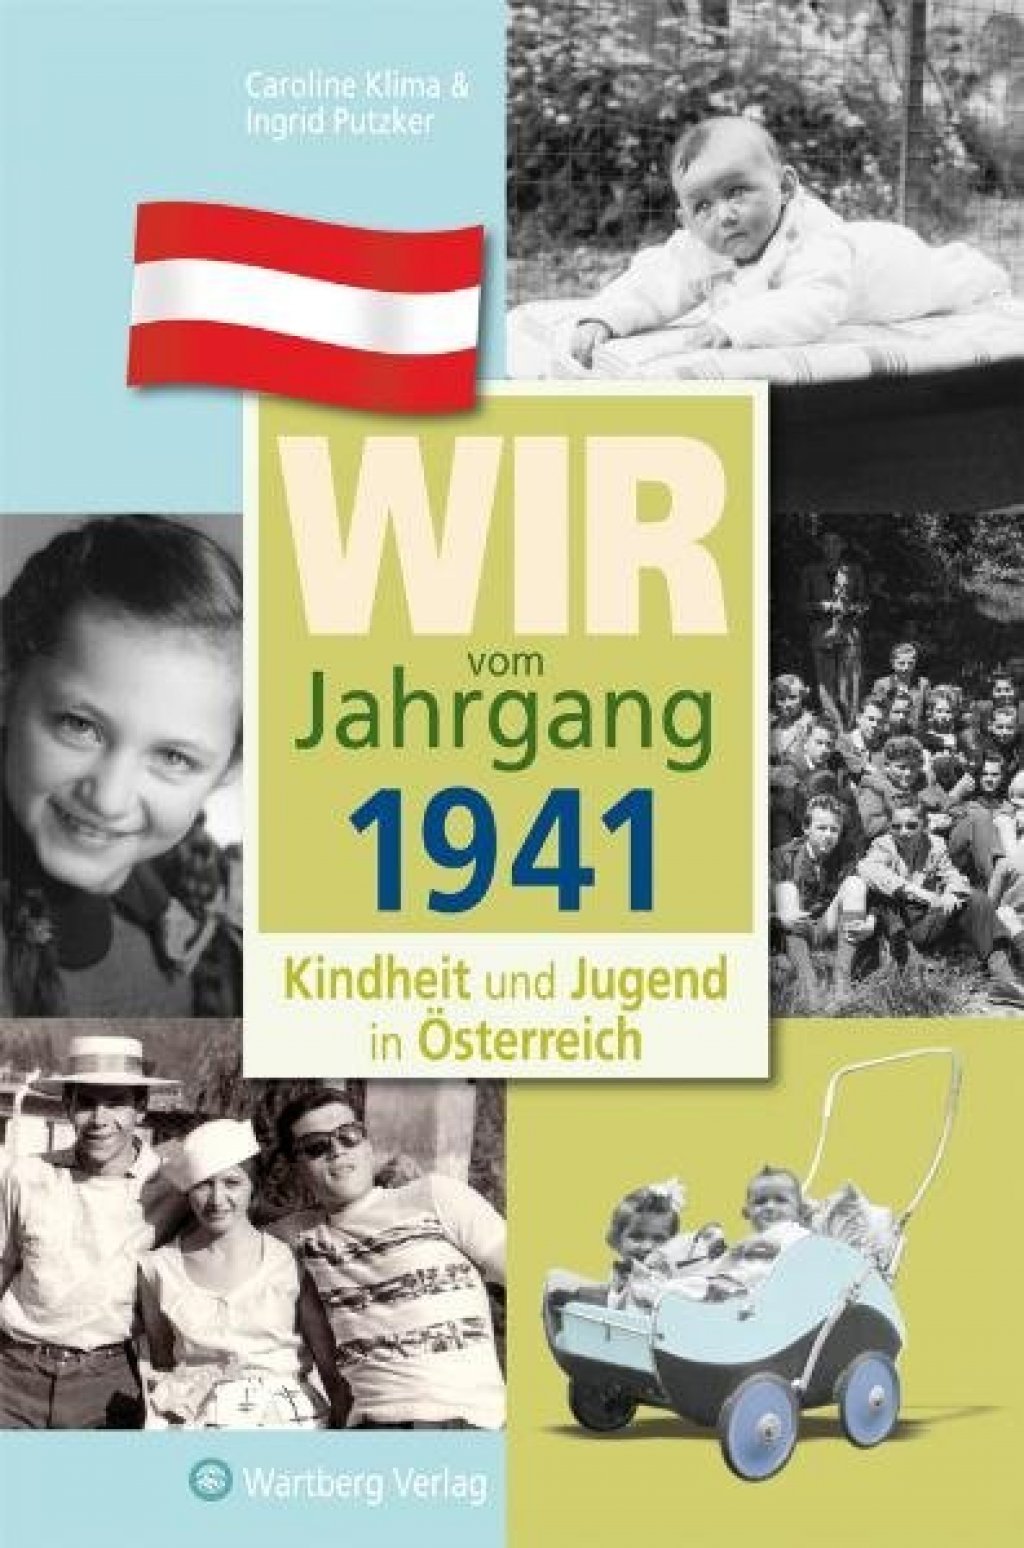 Wir vom Jahrgang 1941 - Kindheit und Jugend in Österreich